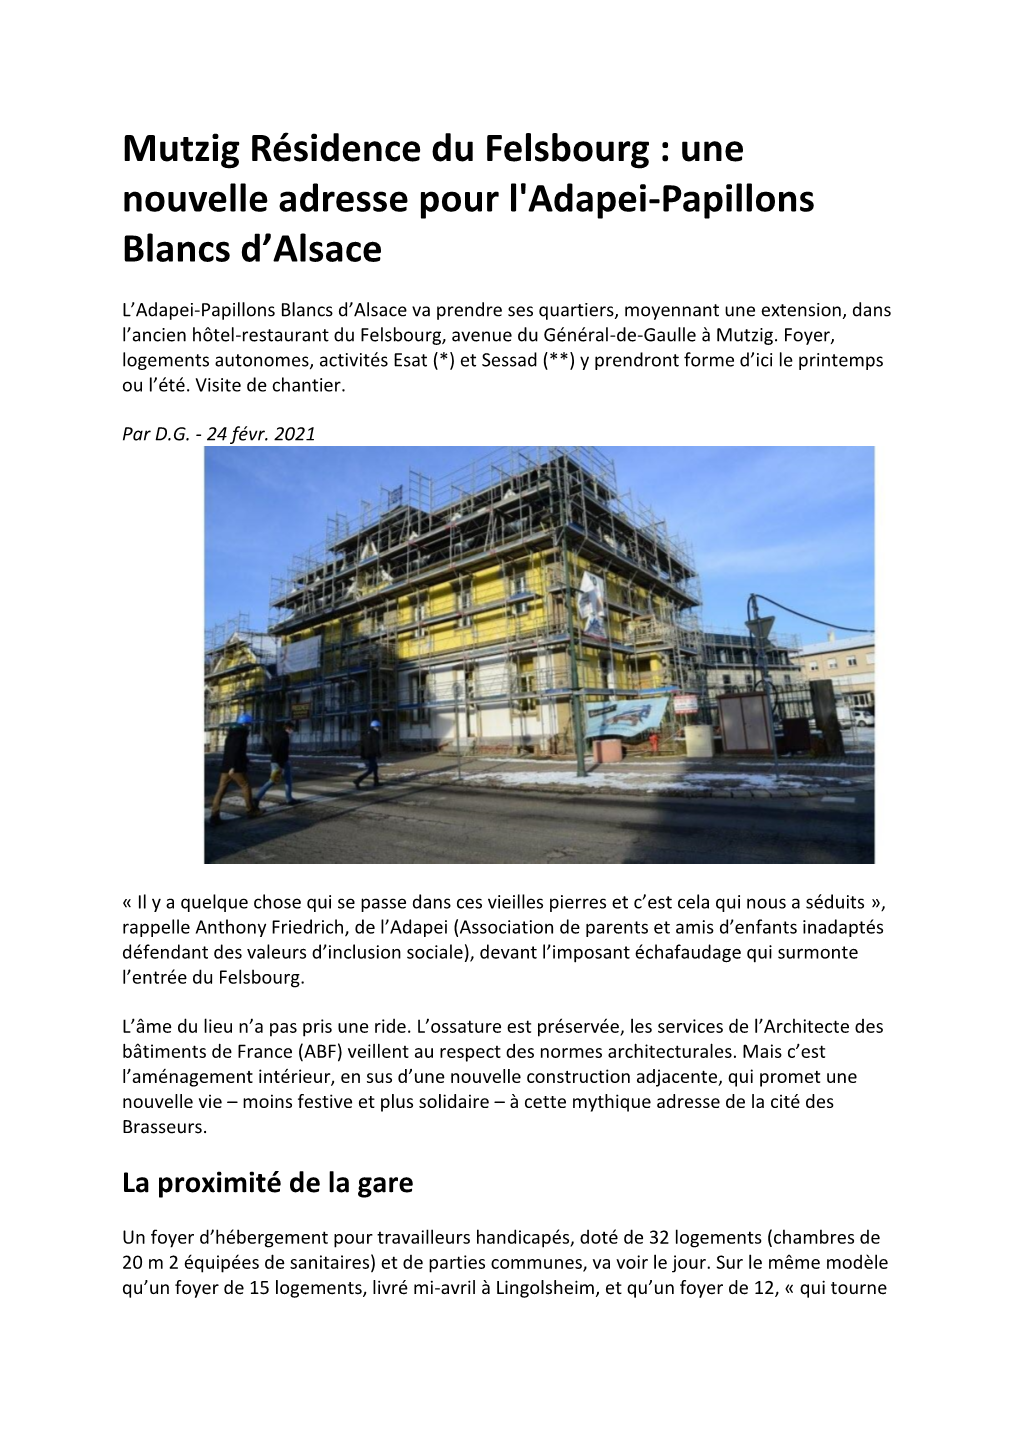 Mutzig Résidence Du Felsbourg : Une Nouvelle Adresse Pour L'adapei-Papillons Blancs D’Alsace